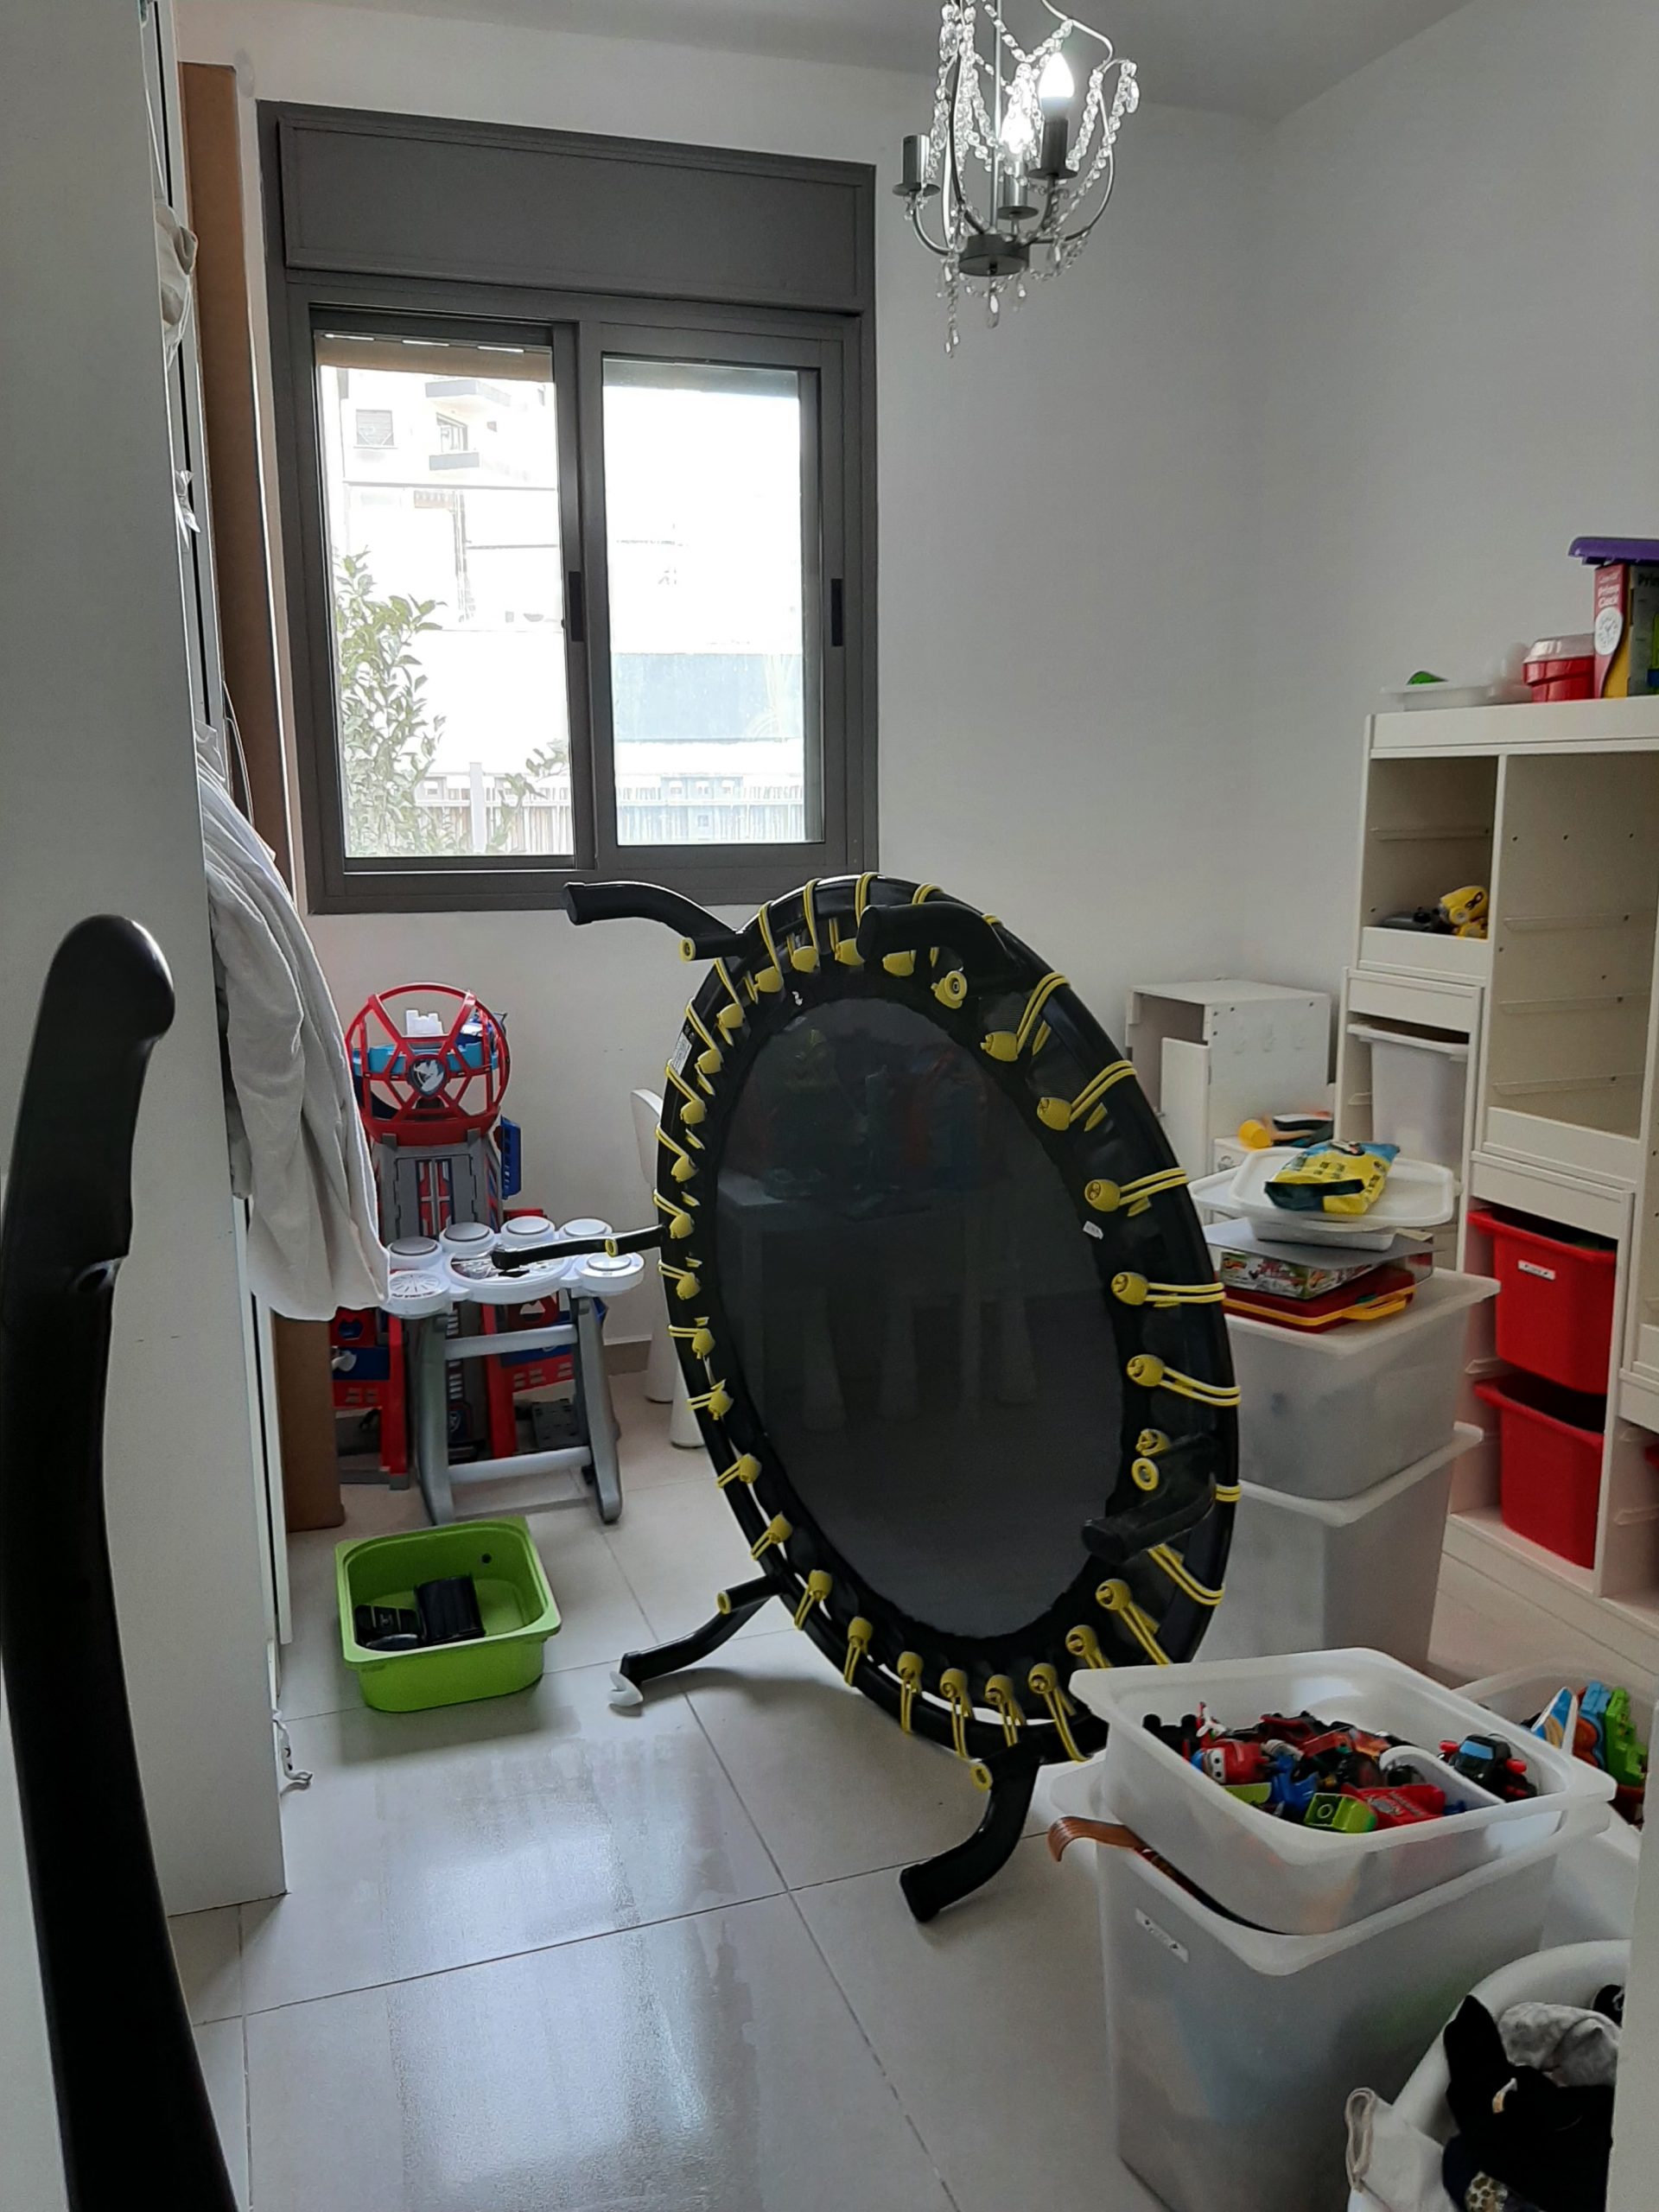 חדר ארונות בדרך להפוך לחדר ילדים